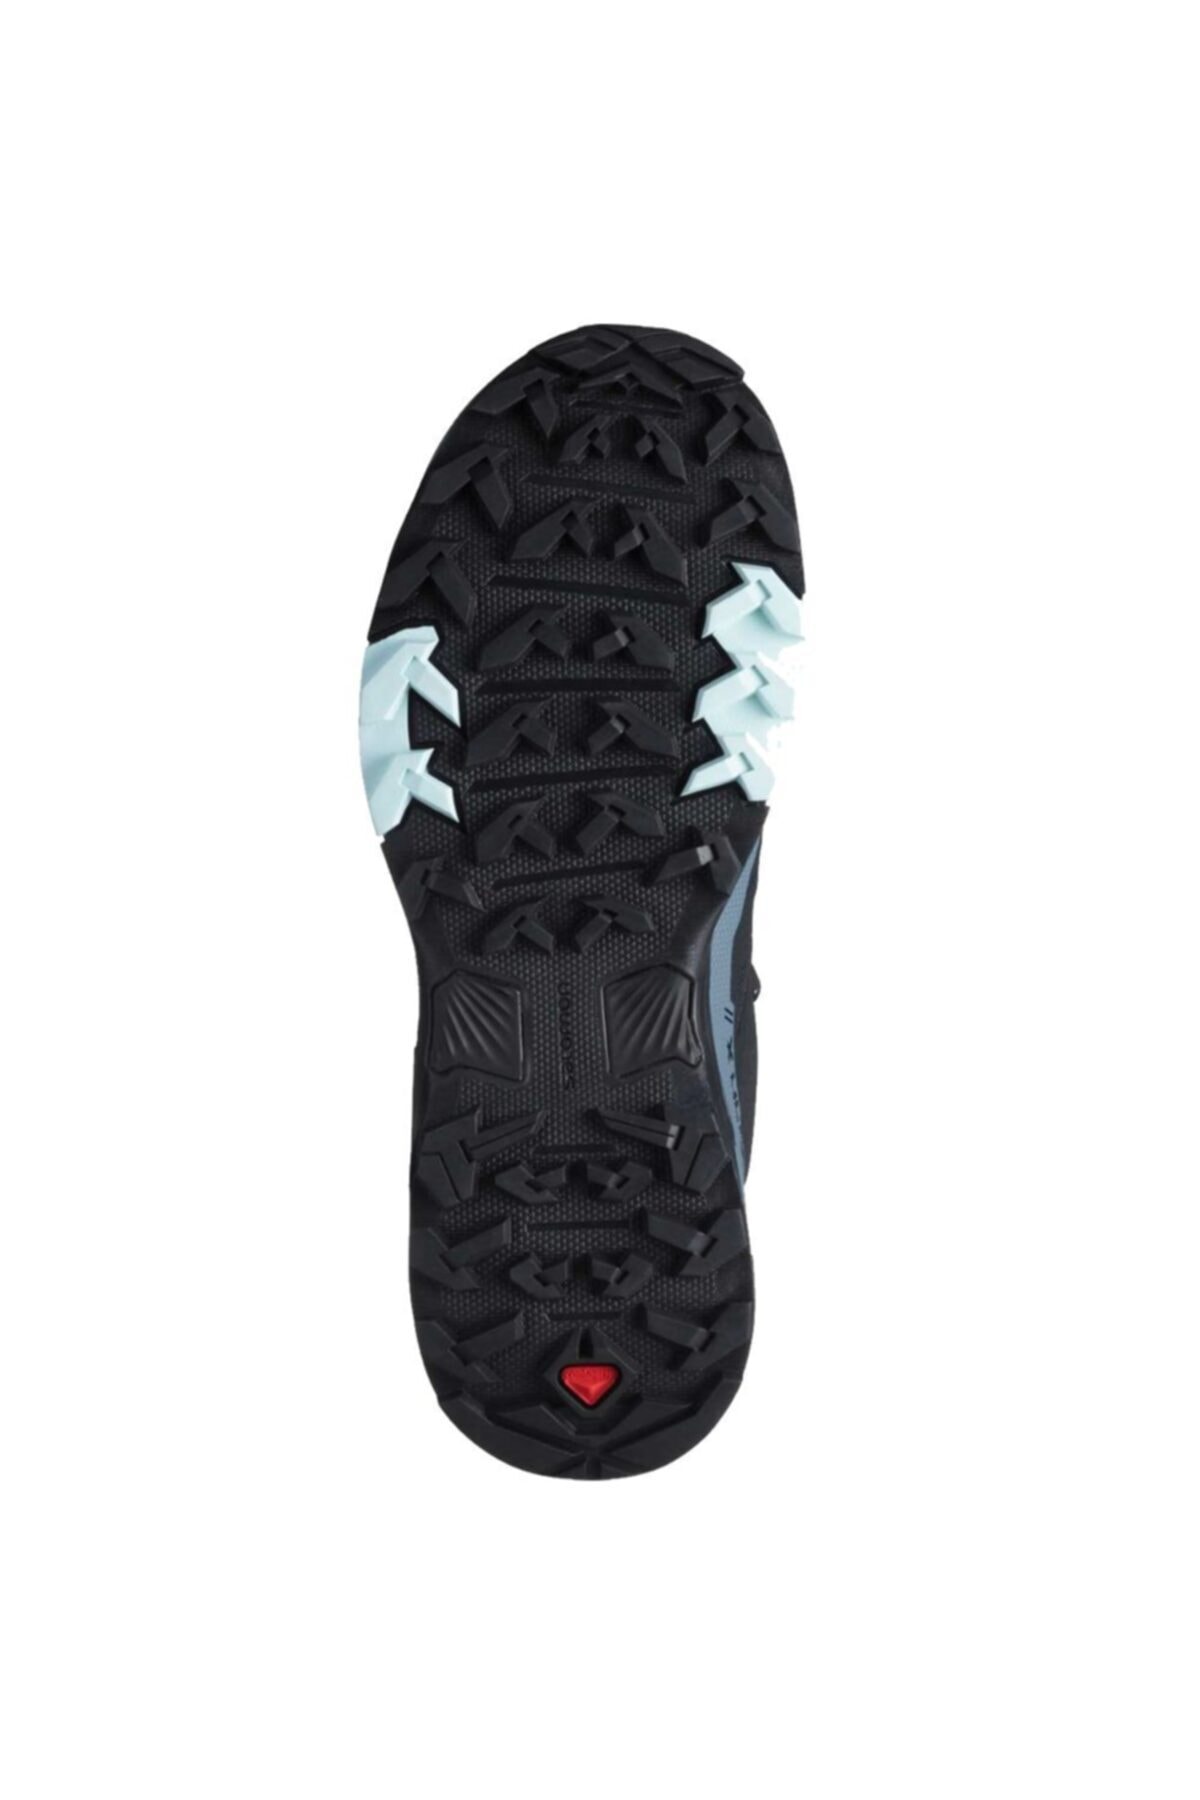 X Ultra 4 Gtx Kadın Outdoor Ayakkabı L41289600-Siyah-mavi